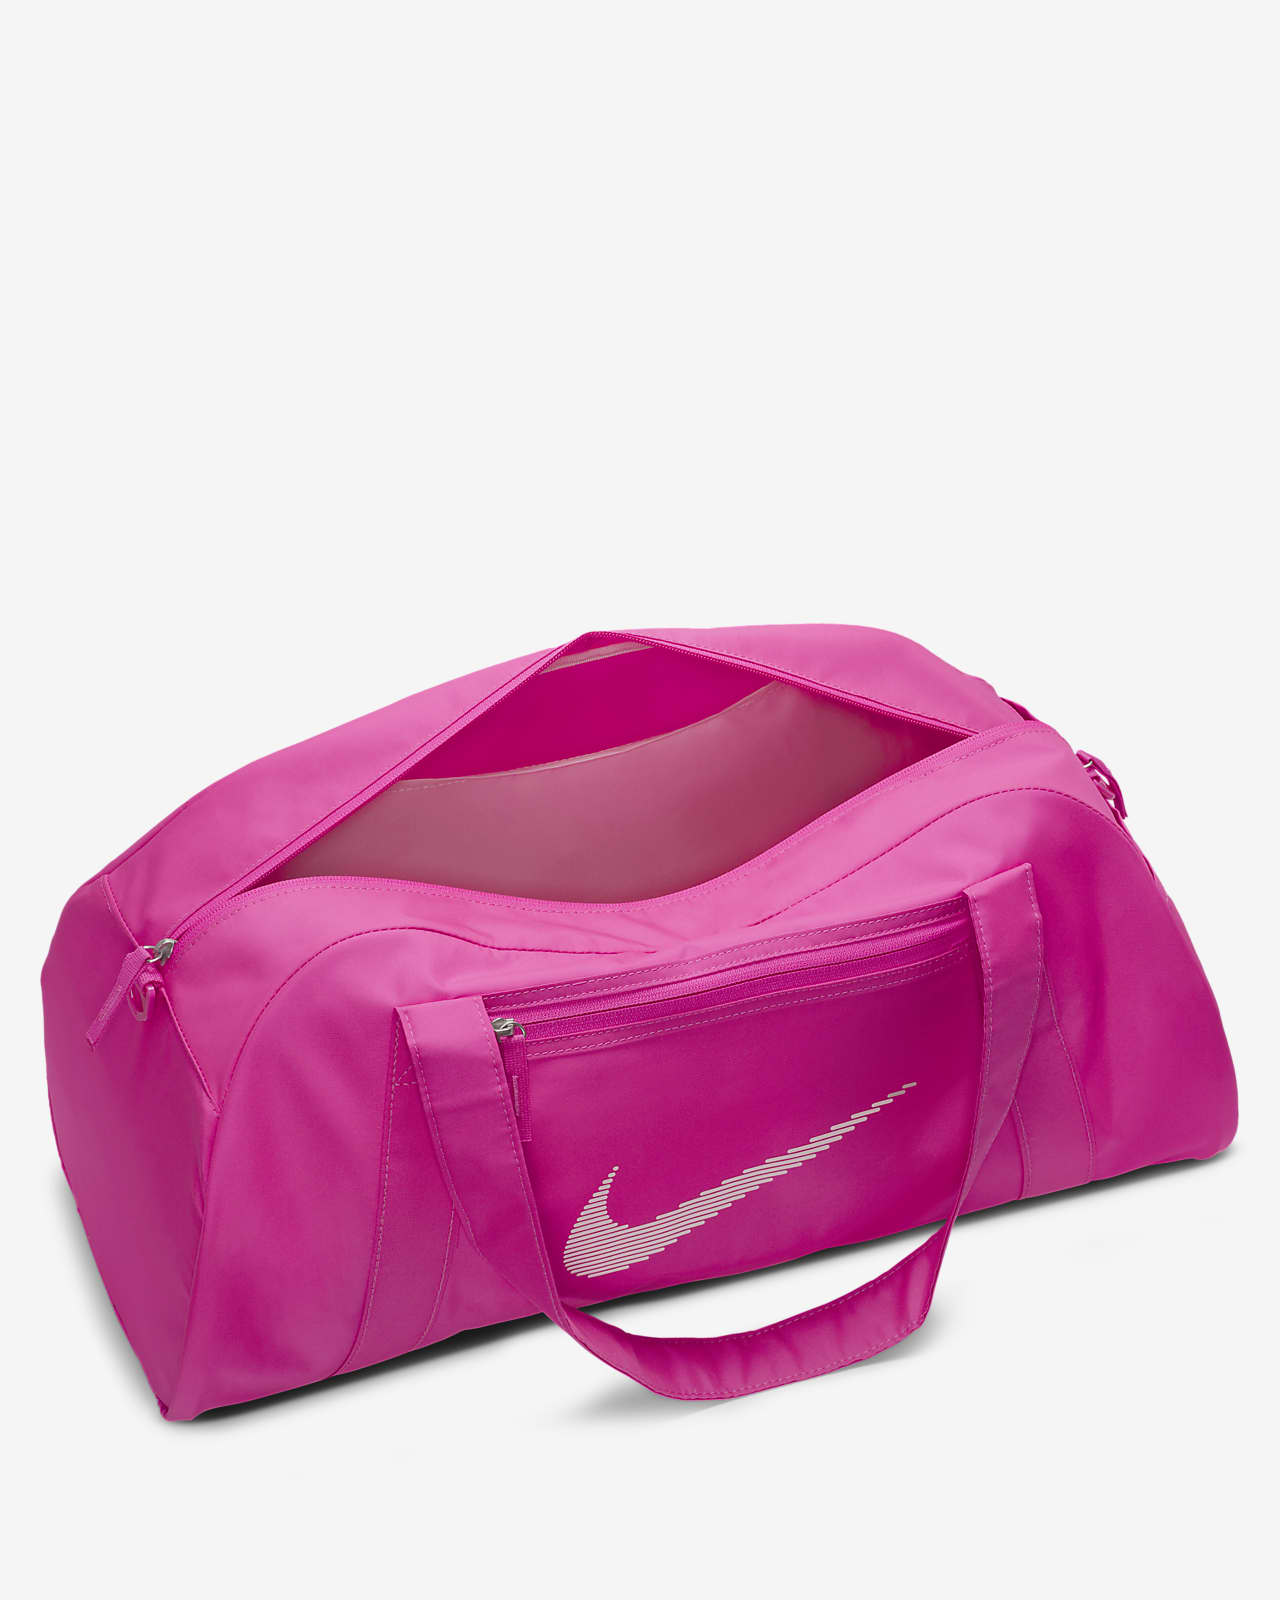 SR Novelties Pink Gym Bag 1 - Buy SR Novelties Pink Gym Bag 1 Online at  Best Prices in India - Gym | Flipkart.com